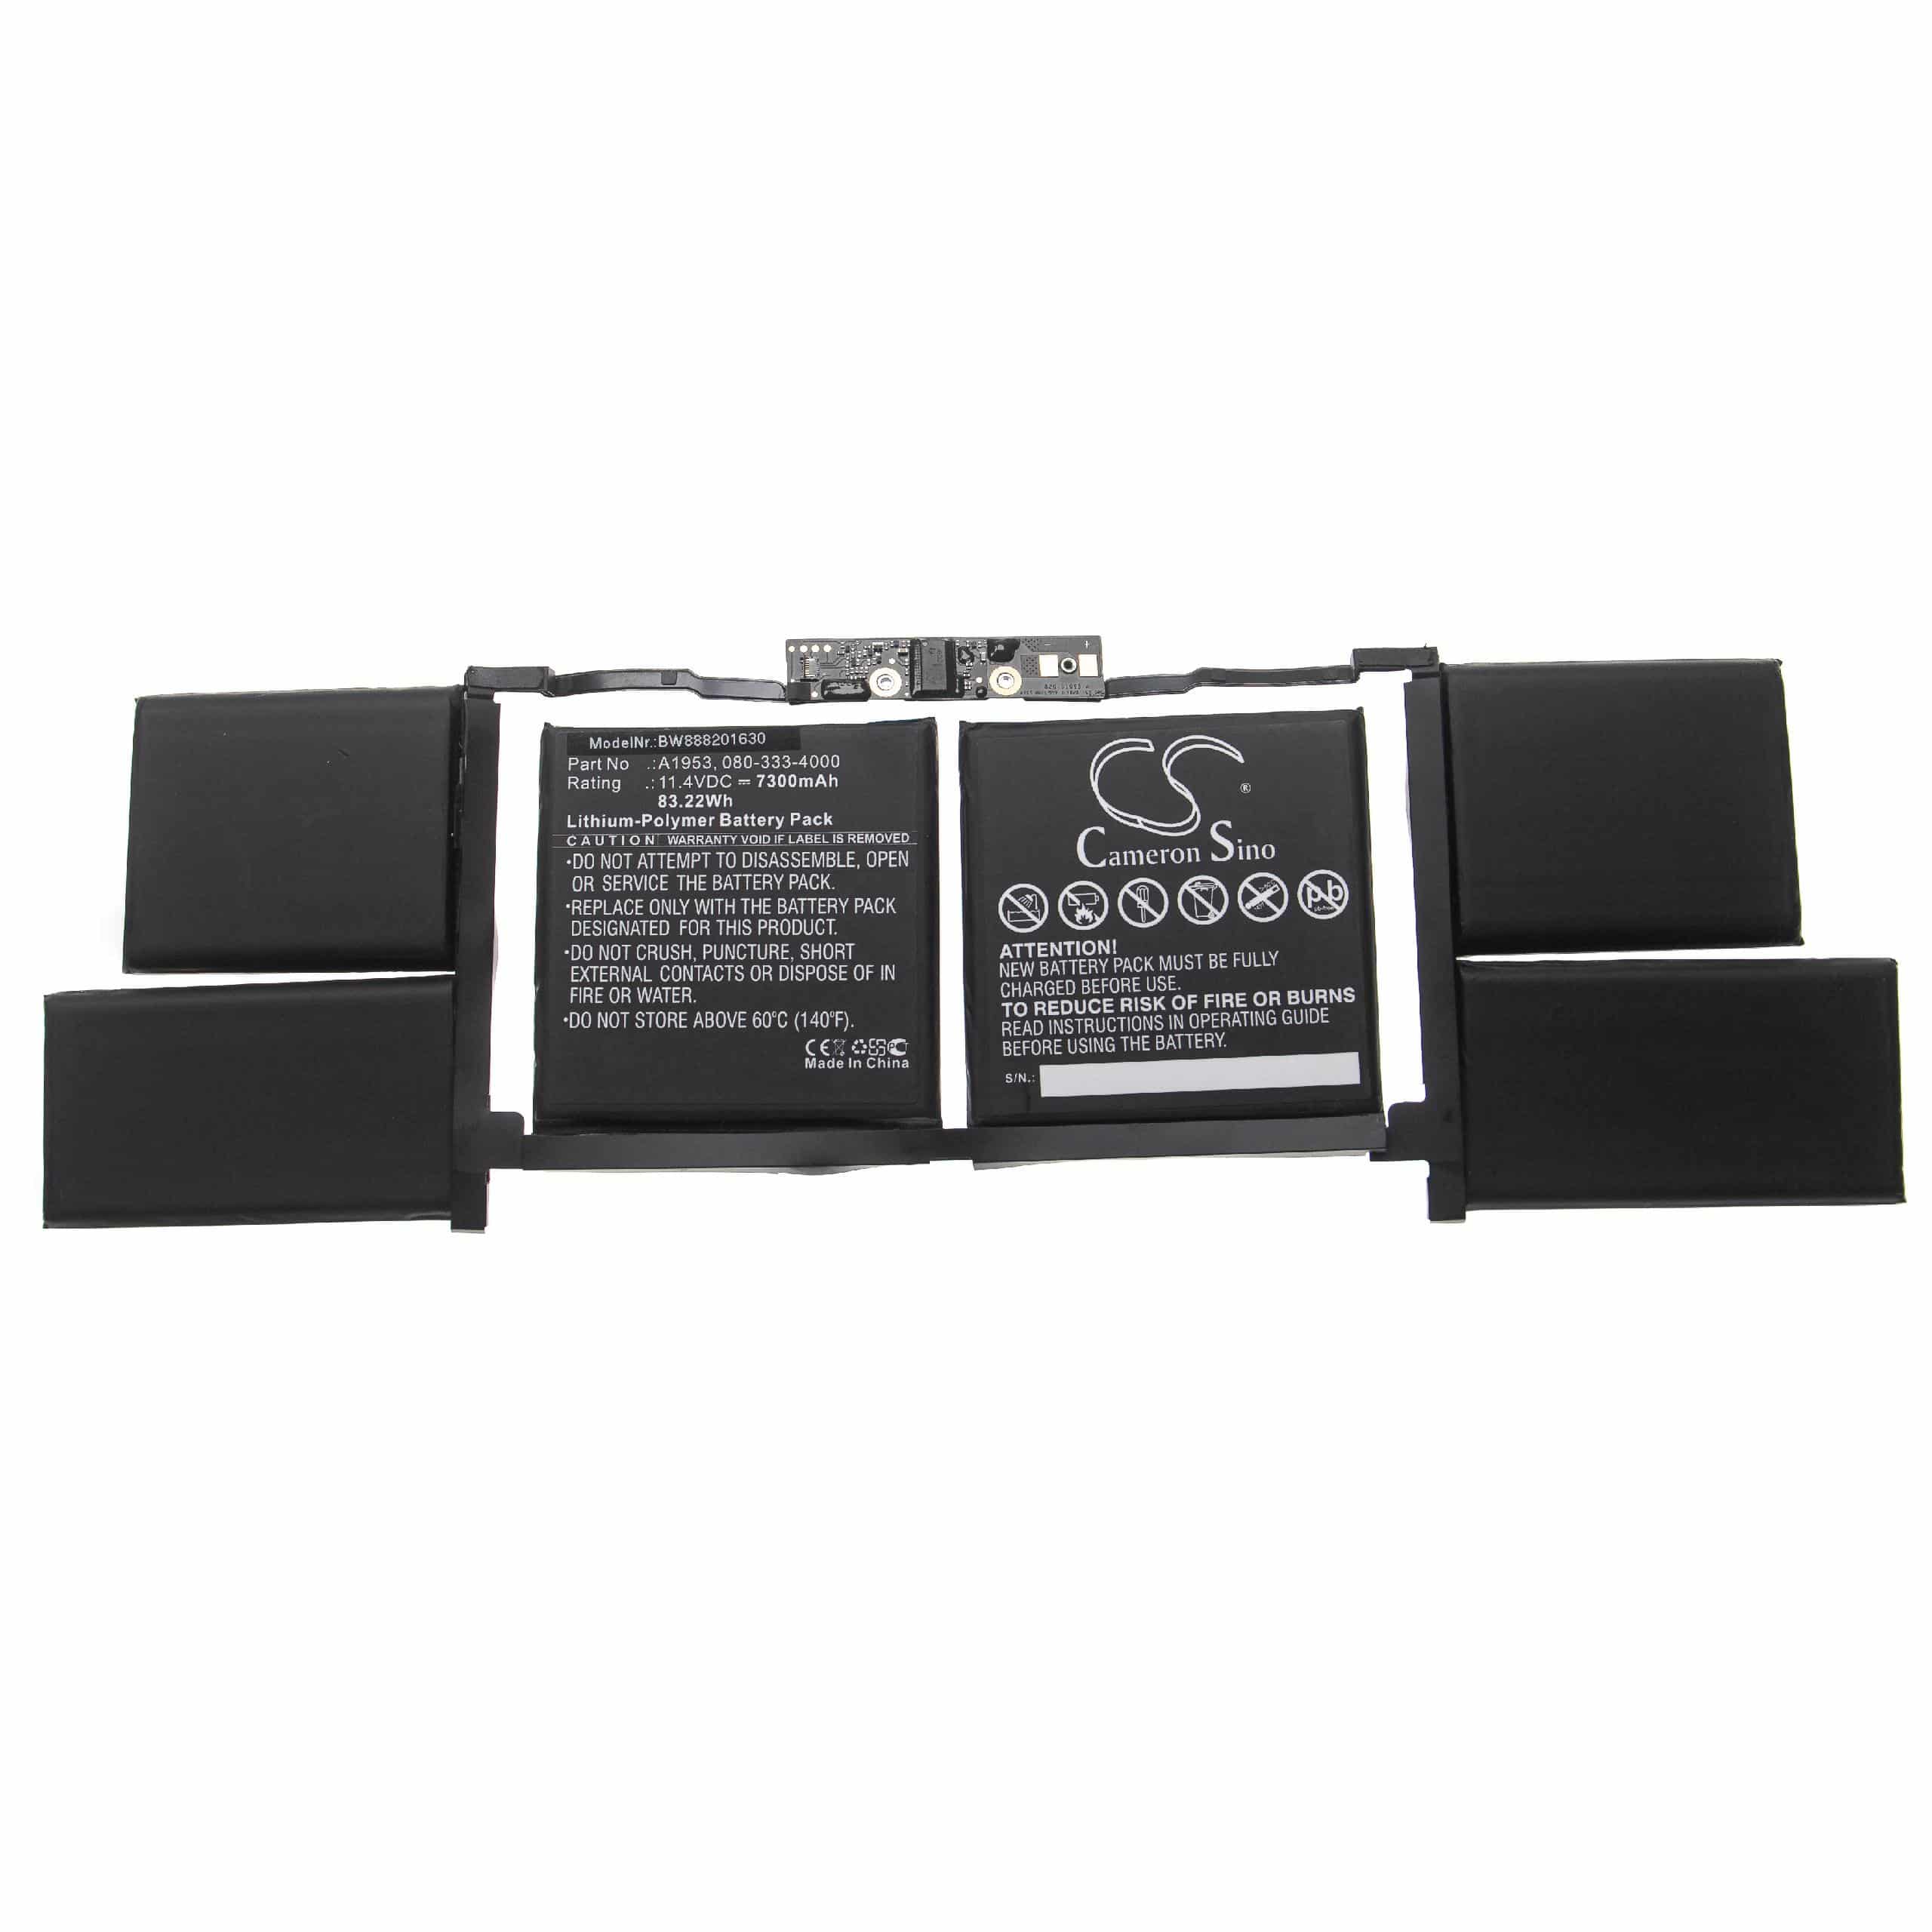 Batterie remplace Apple 020-02391, 080-333-4000 pour ordinateur portable - 7300mAh 11,4V Li-polymère, noir